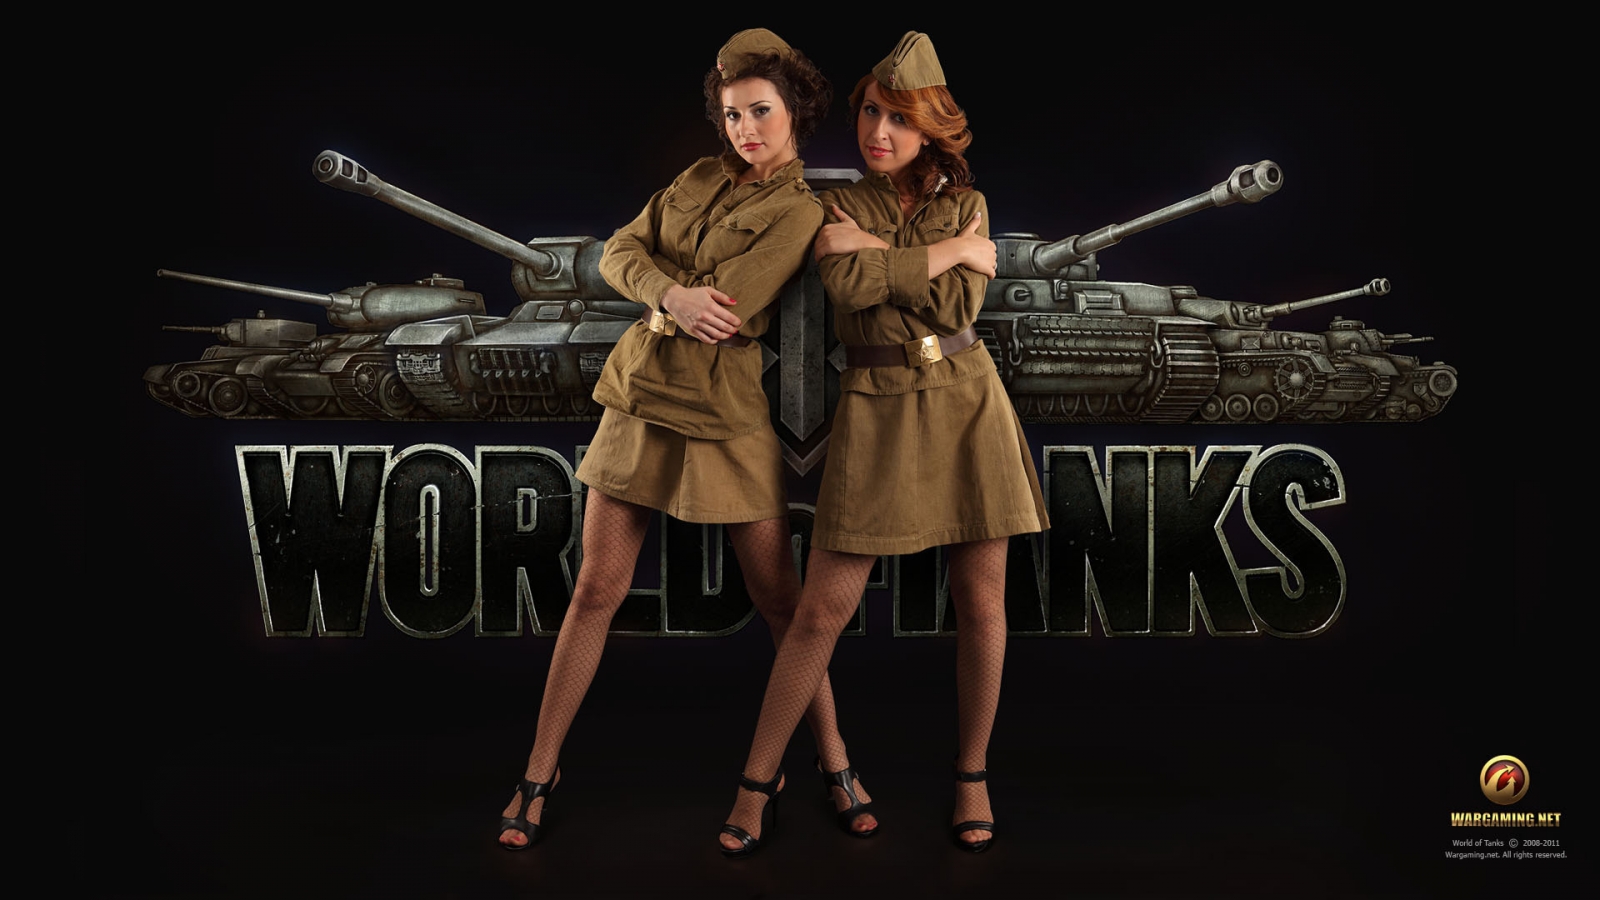 World of Tanks Girls for 1600 x 900 HDTV resolution